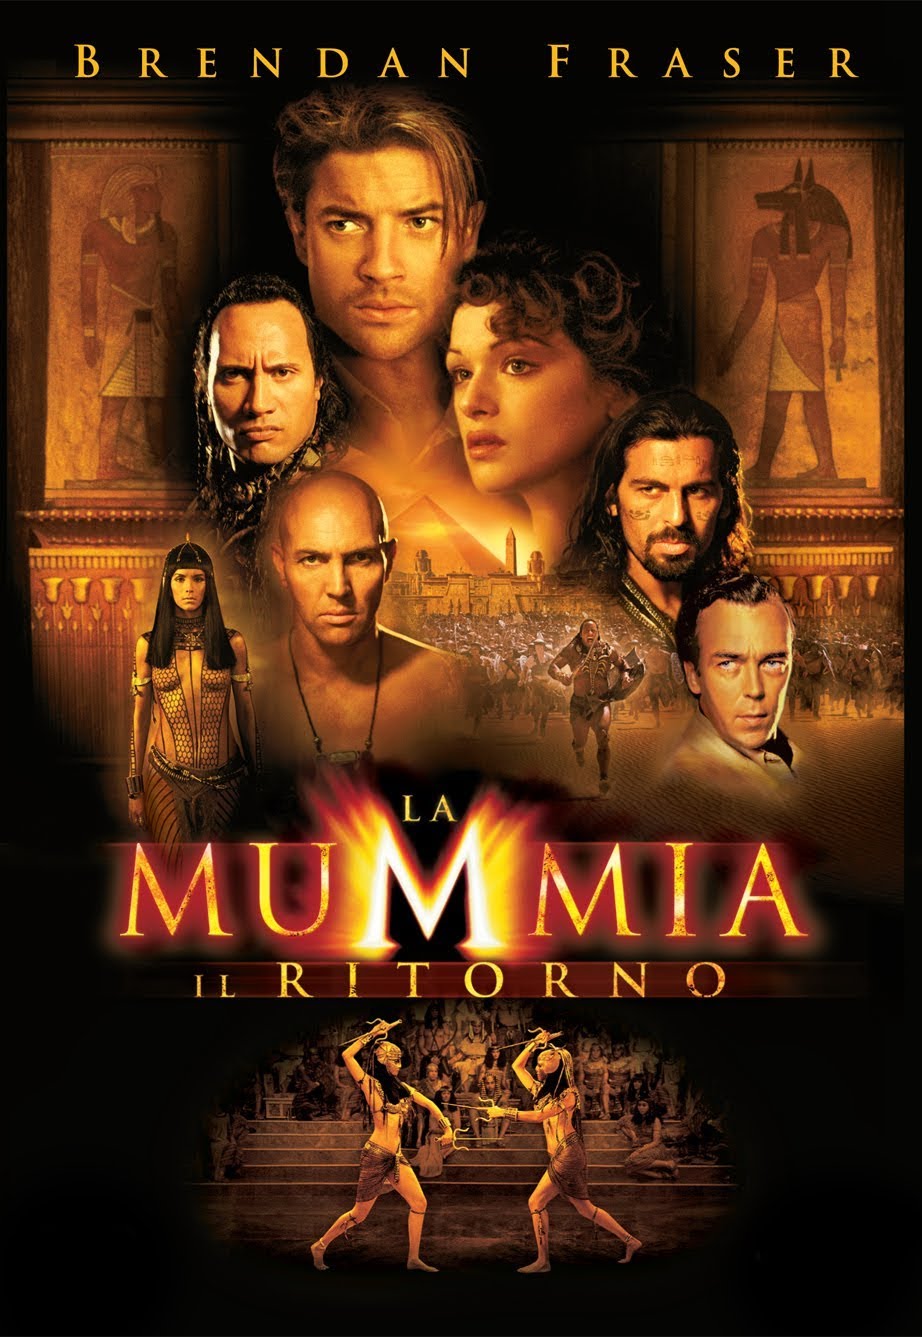 La Mummia 2 – Il Ritorno [HD] (2001)